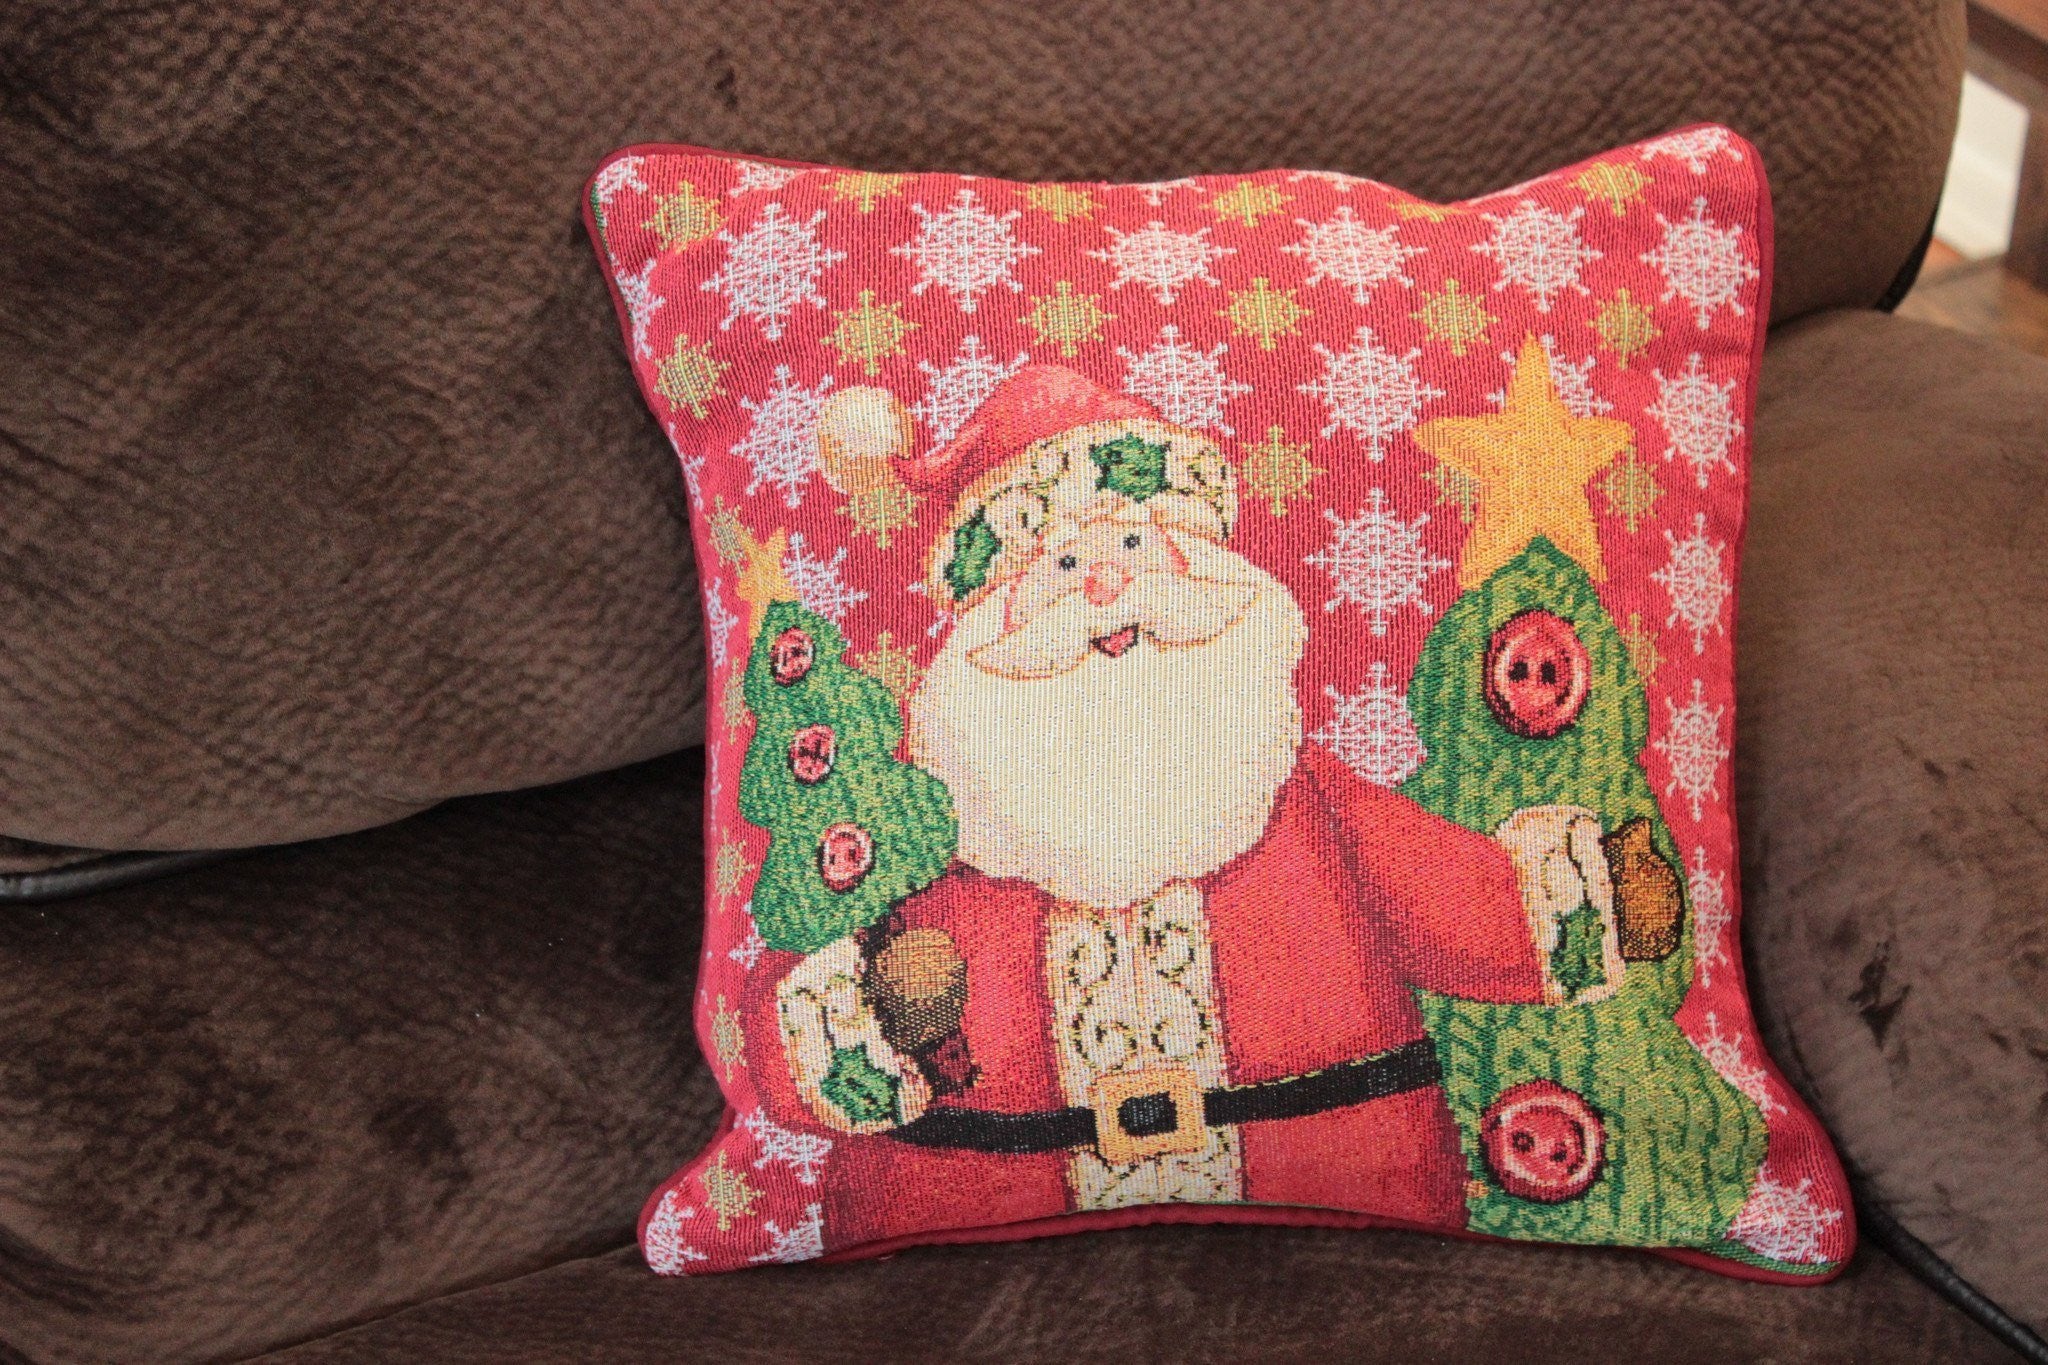 Tache Christmas Cute Santa Claus Is Coming to Town Throw Pillow Cover (DB15191CC) - Tache Home Fashion